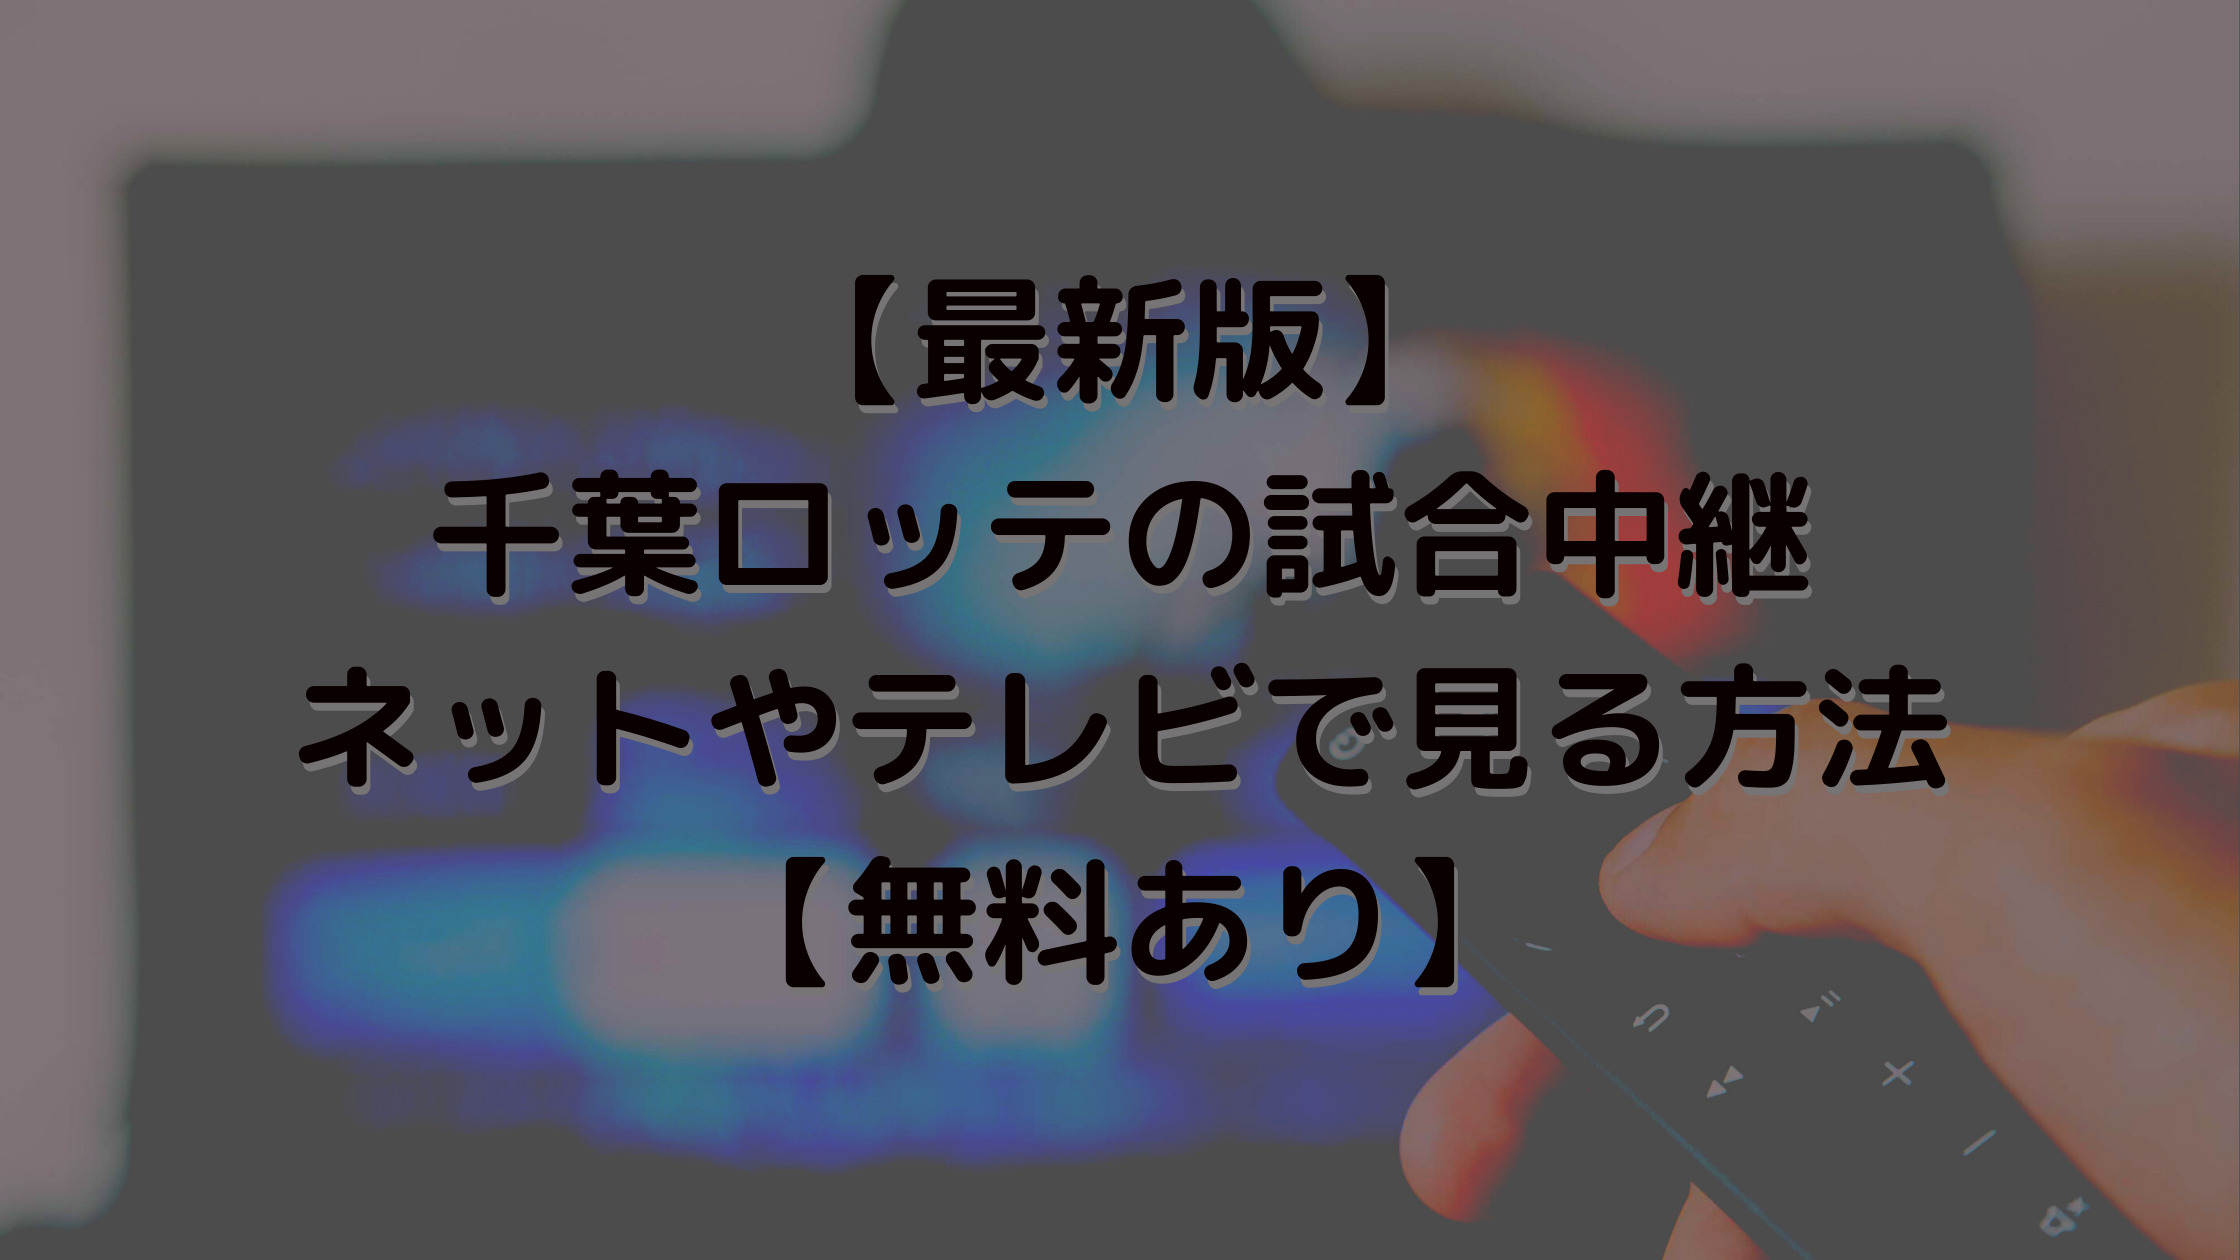 【最新版】千葉ロッテの試合中継をネットやテレビで見る方法【無料あり】